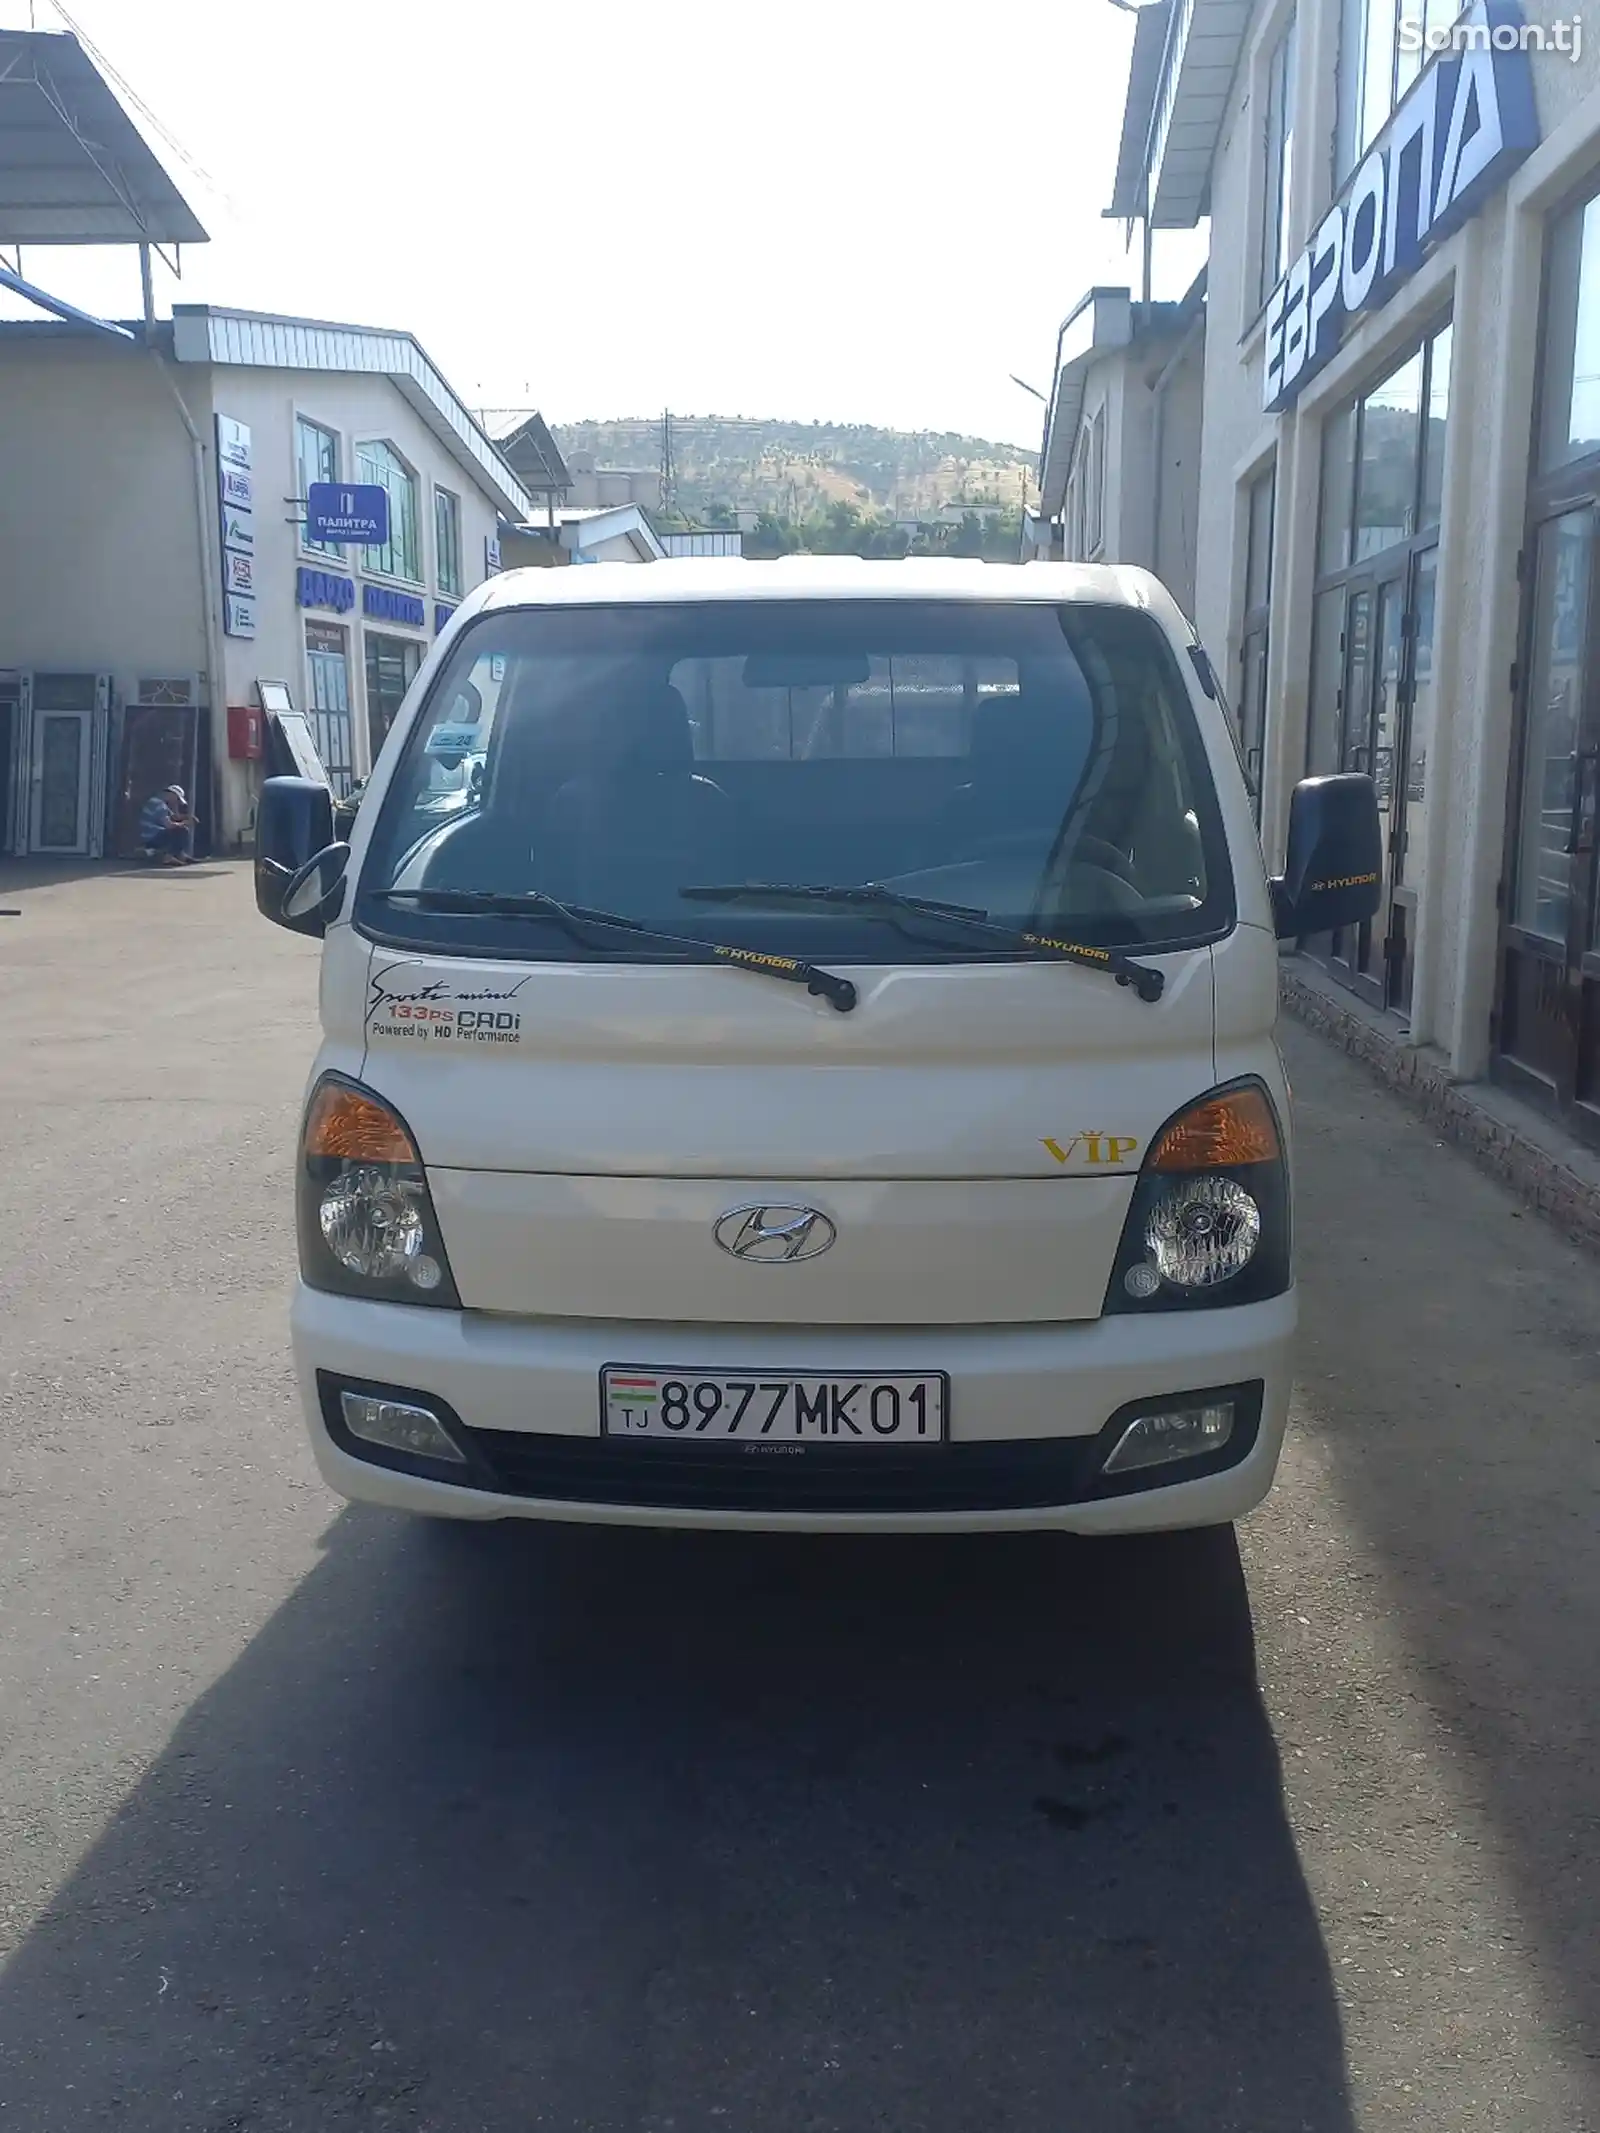 Бортовой автомобиль Hyundai porter, 2014-9